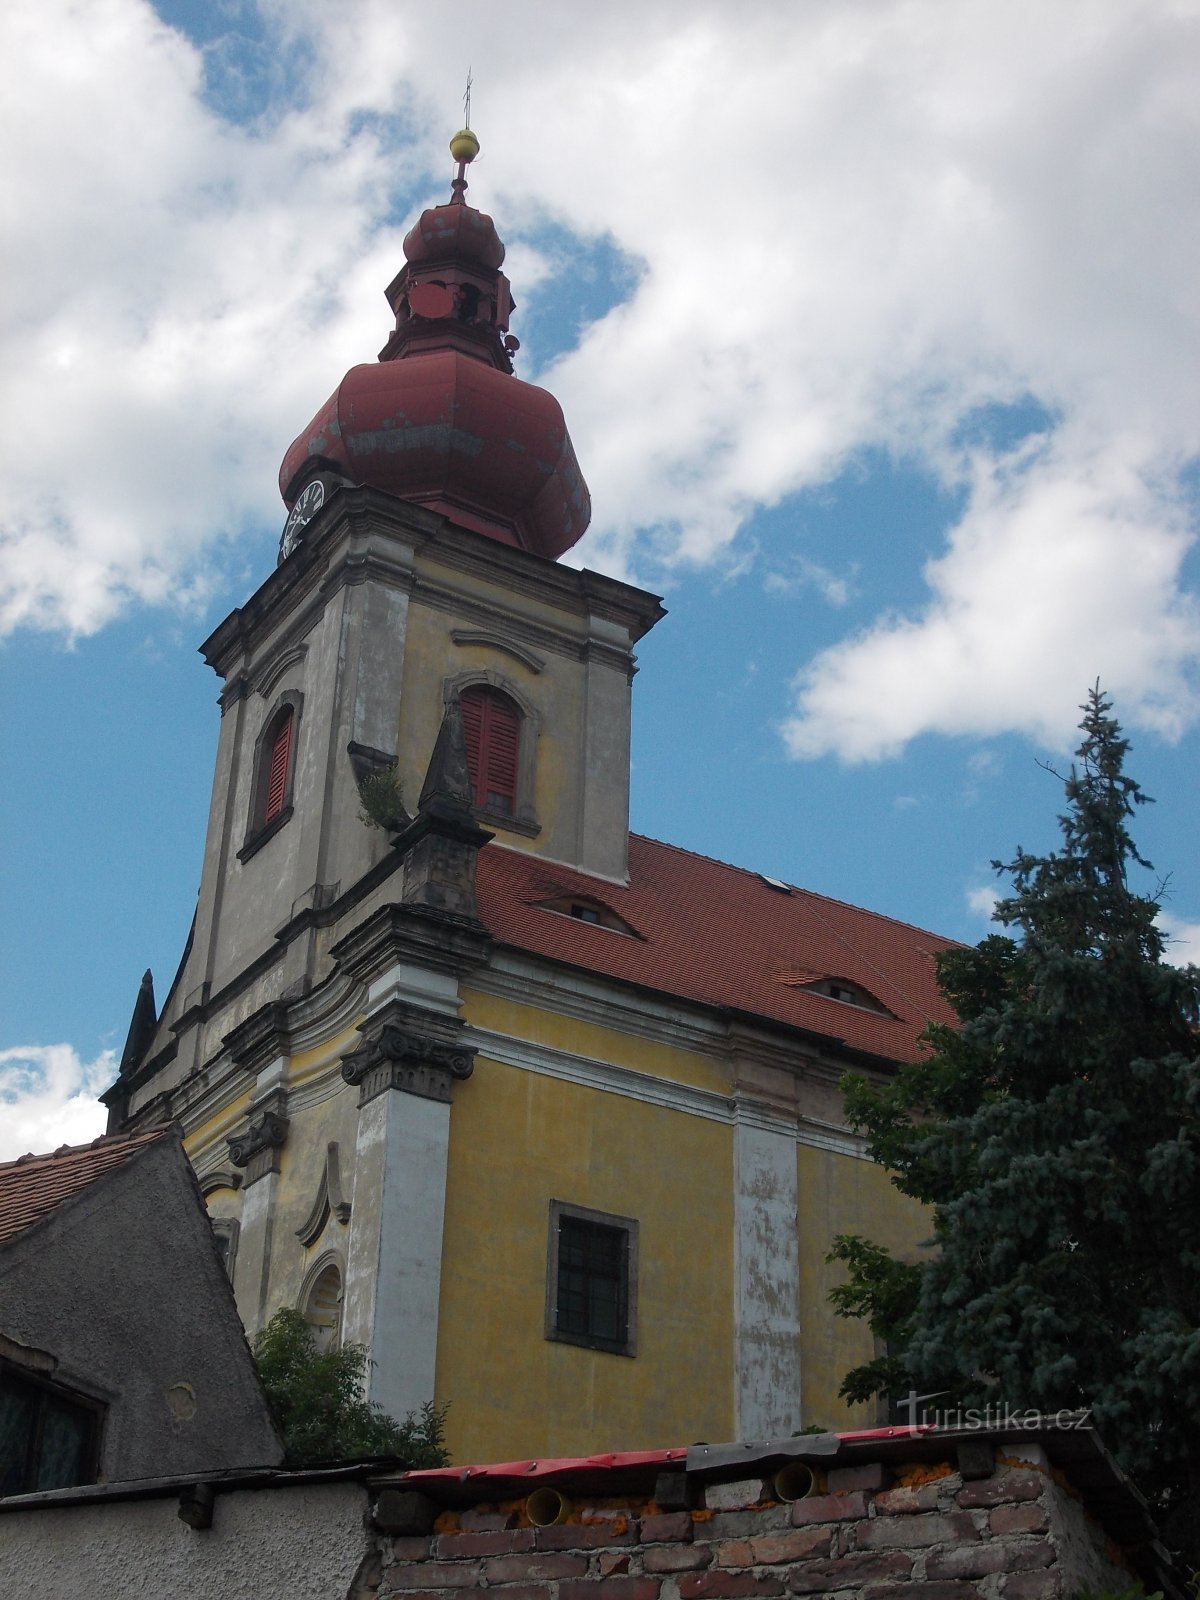 o biserică cu turn prismatic încorporat, culmea cu un turn în formă de ceapă